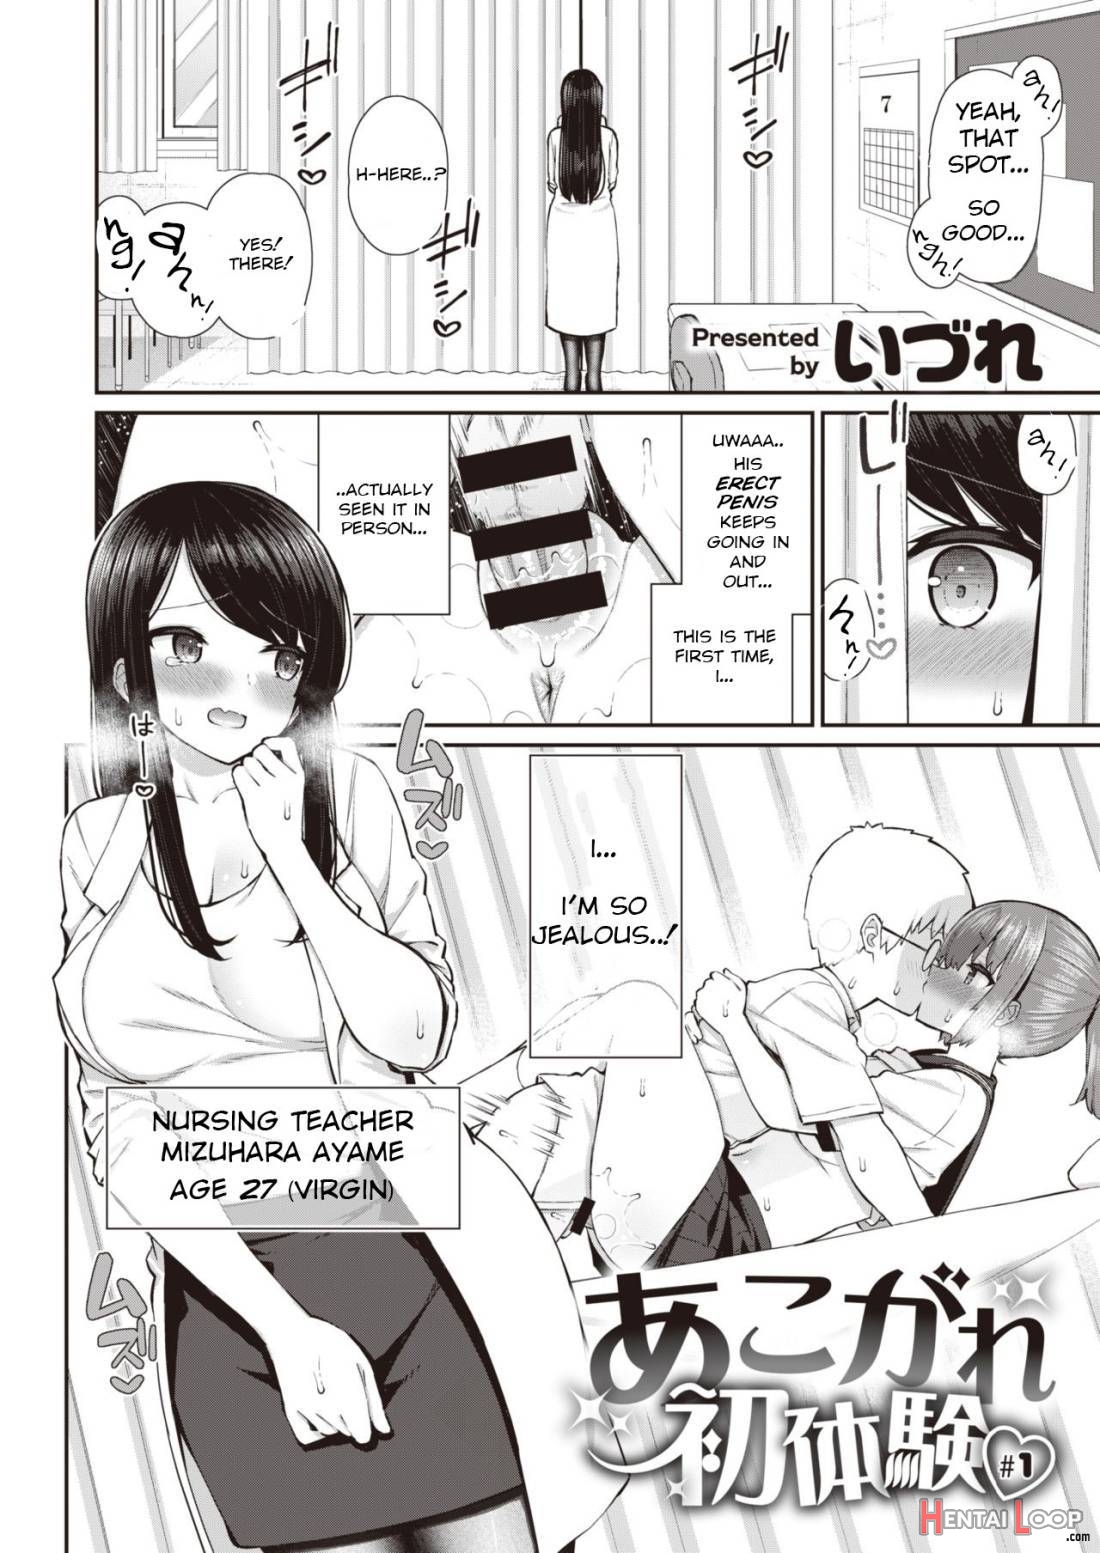 Akogare Hatsu Taiken #1 page 5